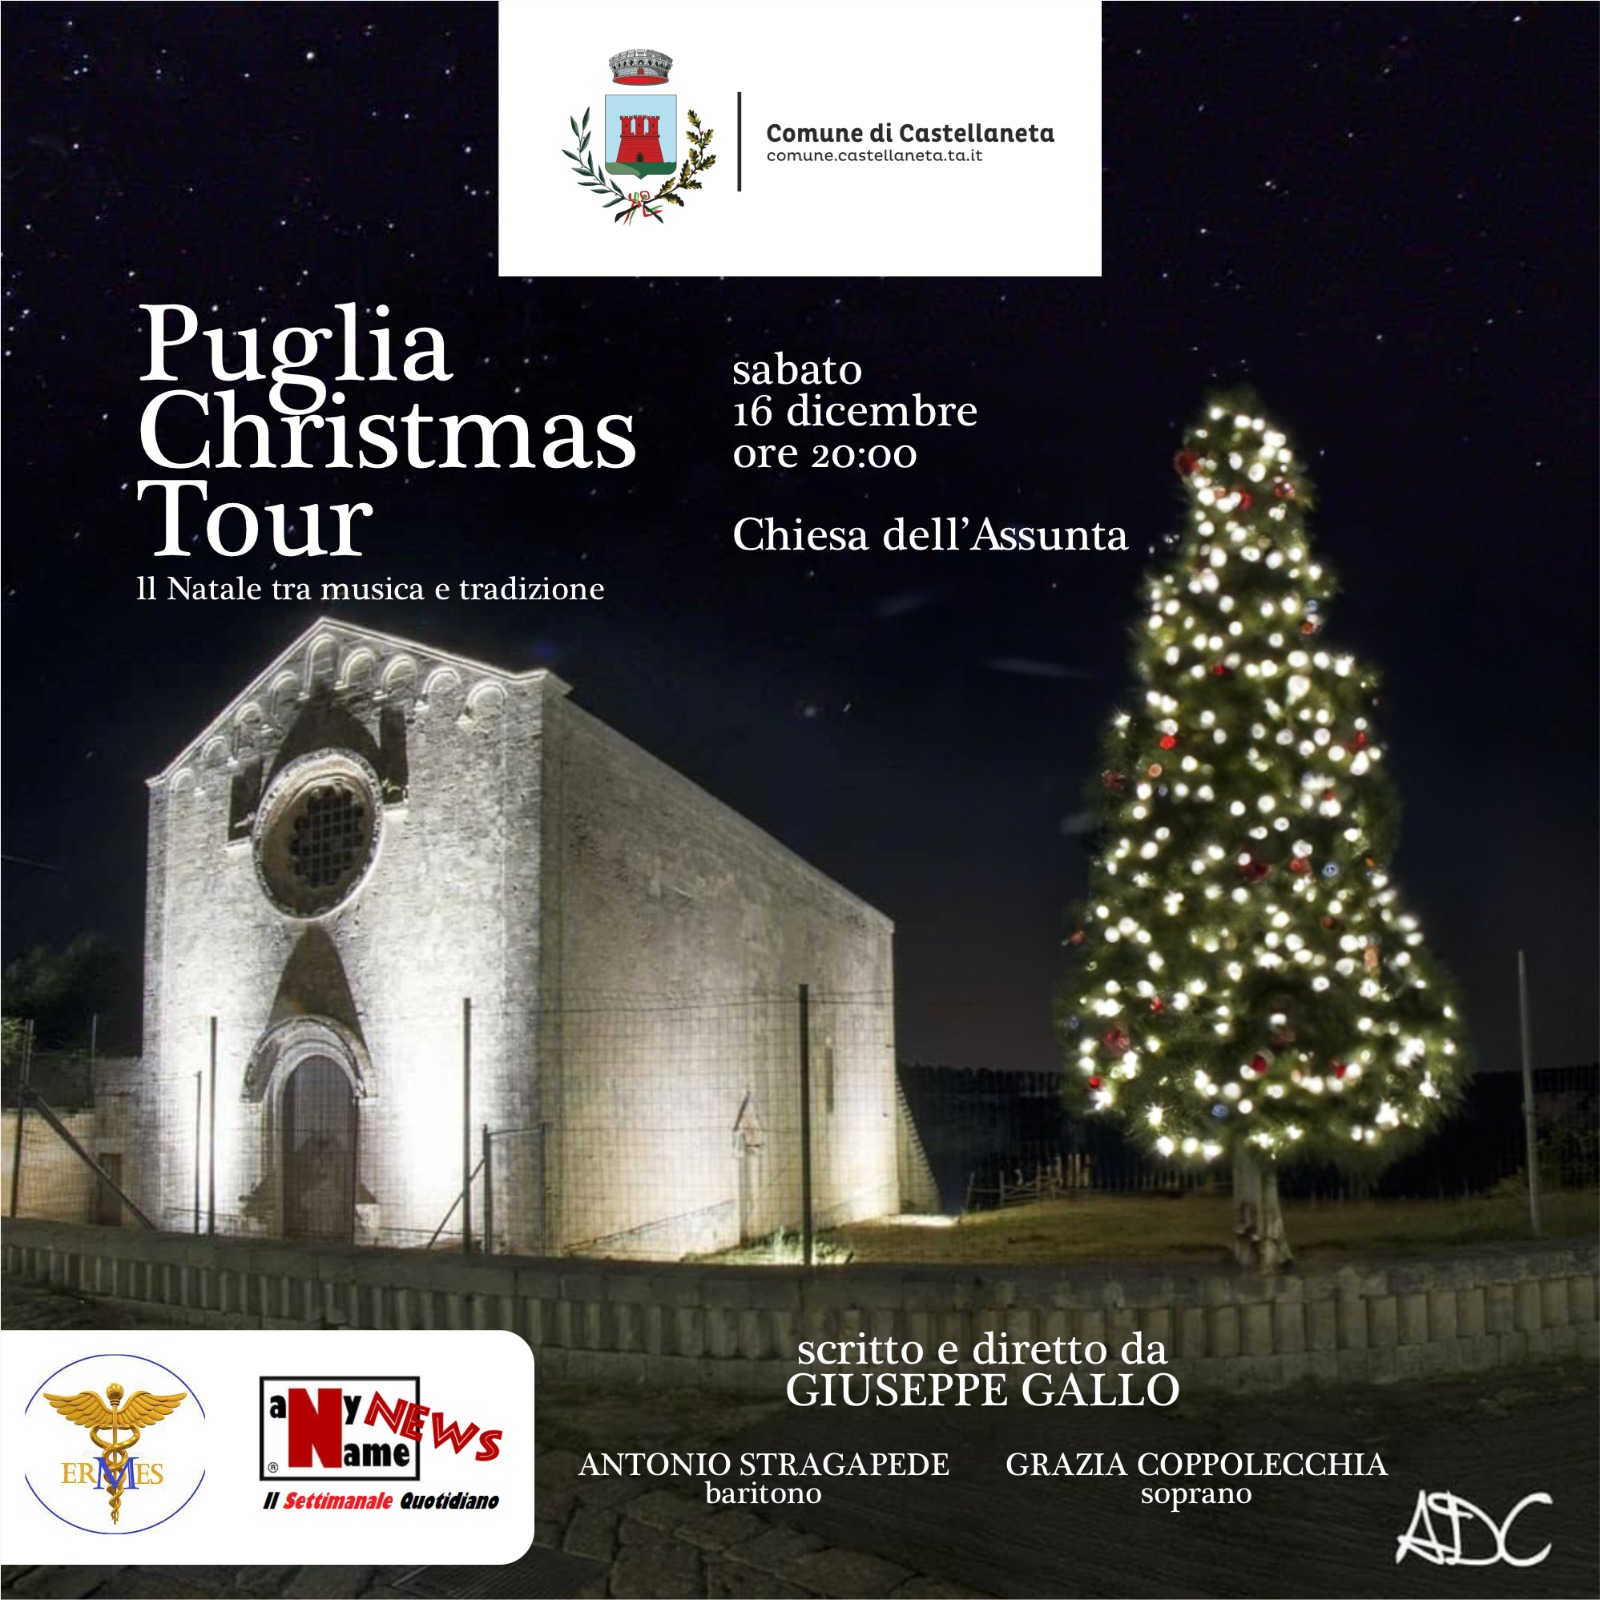 Puglia Christmas Tour il 16 dicembre arriva a Castellaneta